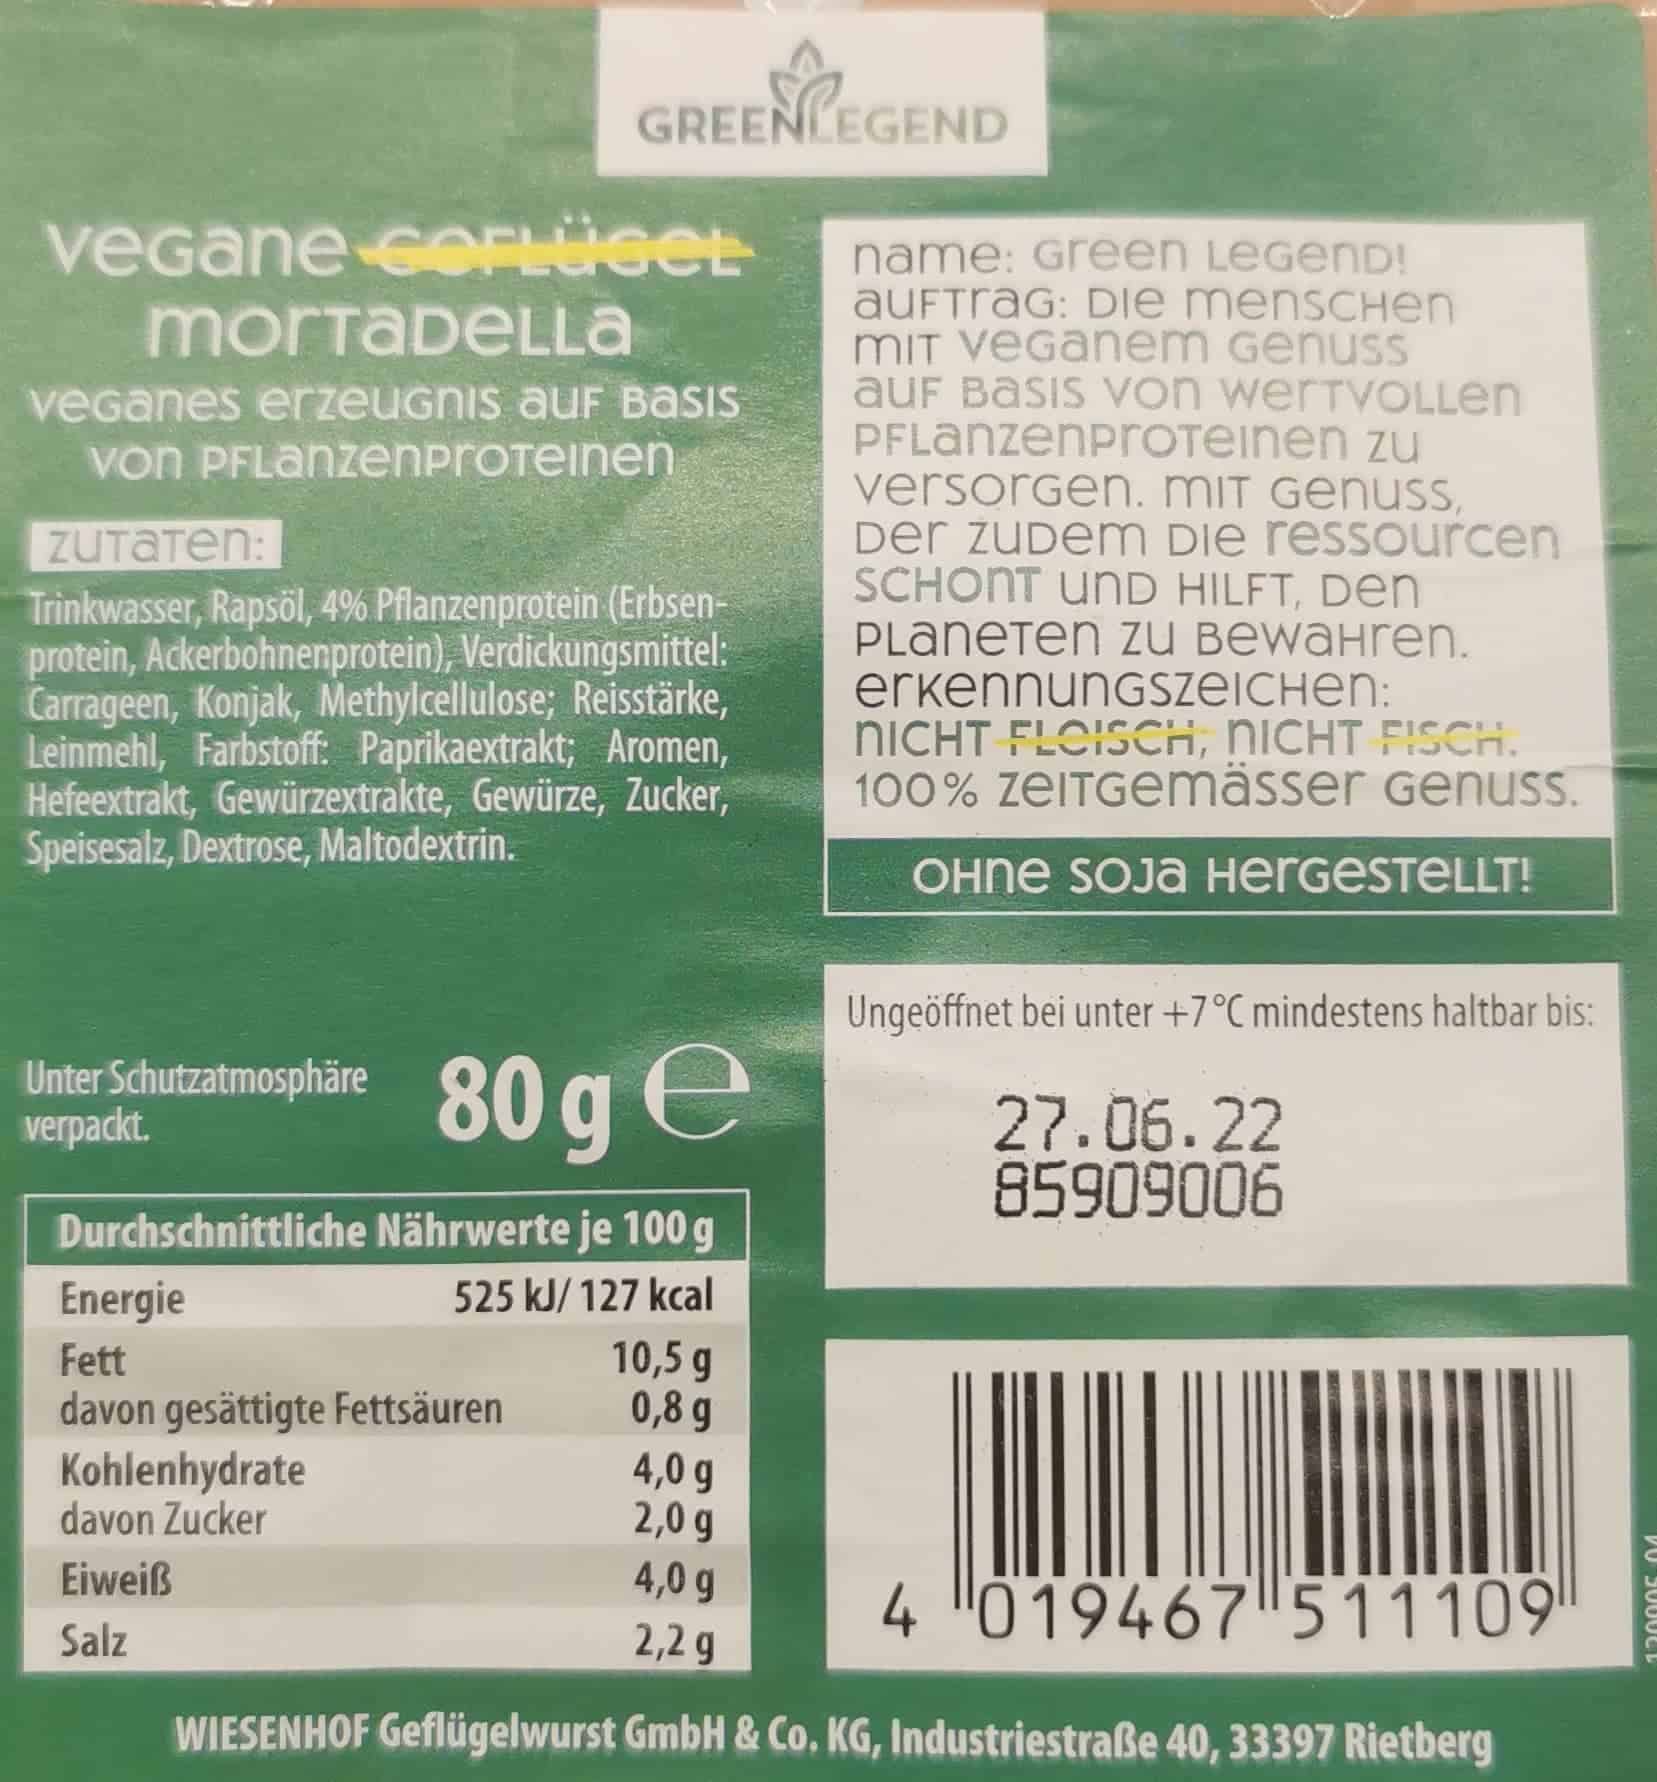 Green Legend - Vegane Mortadella Inhaltsstoffe und Nährwerte